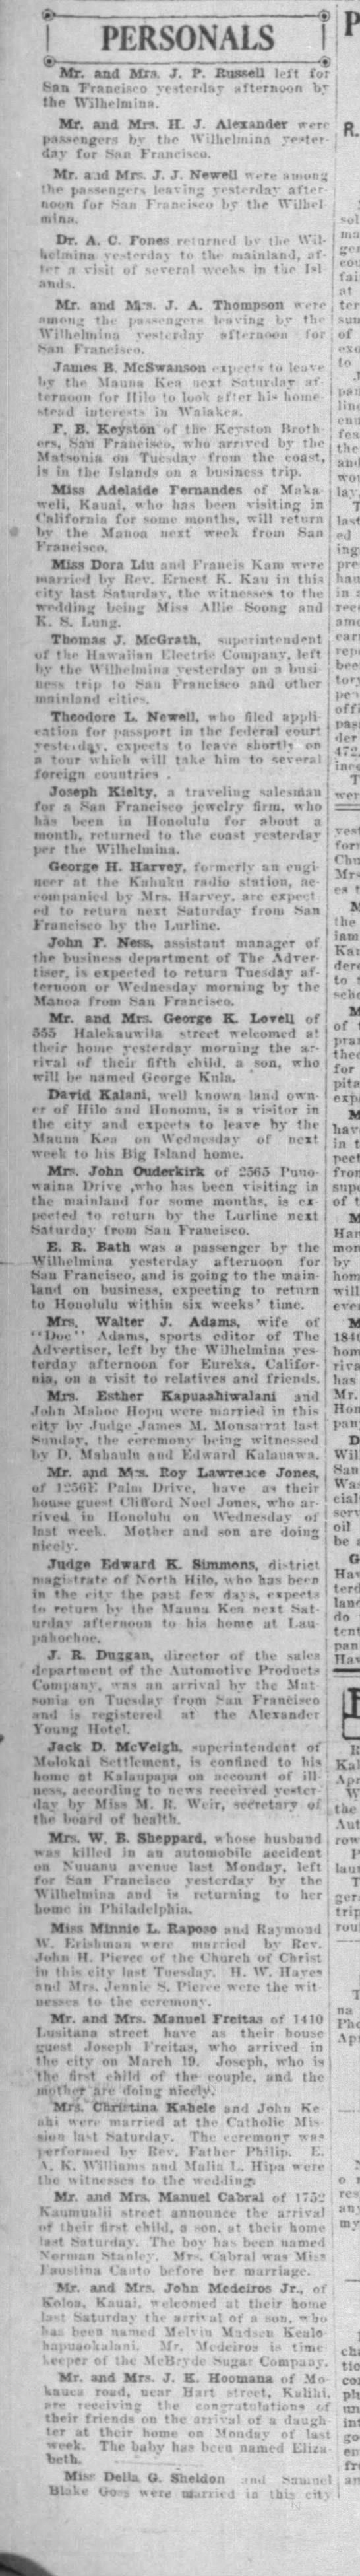 Personals column, 1921 - 